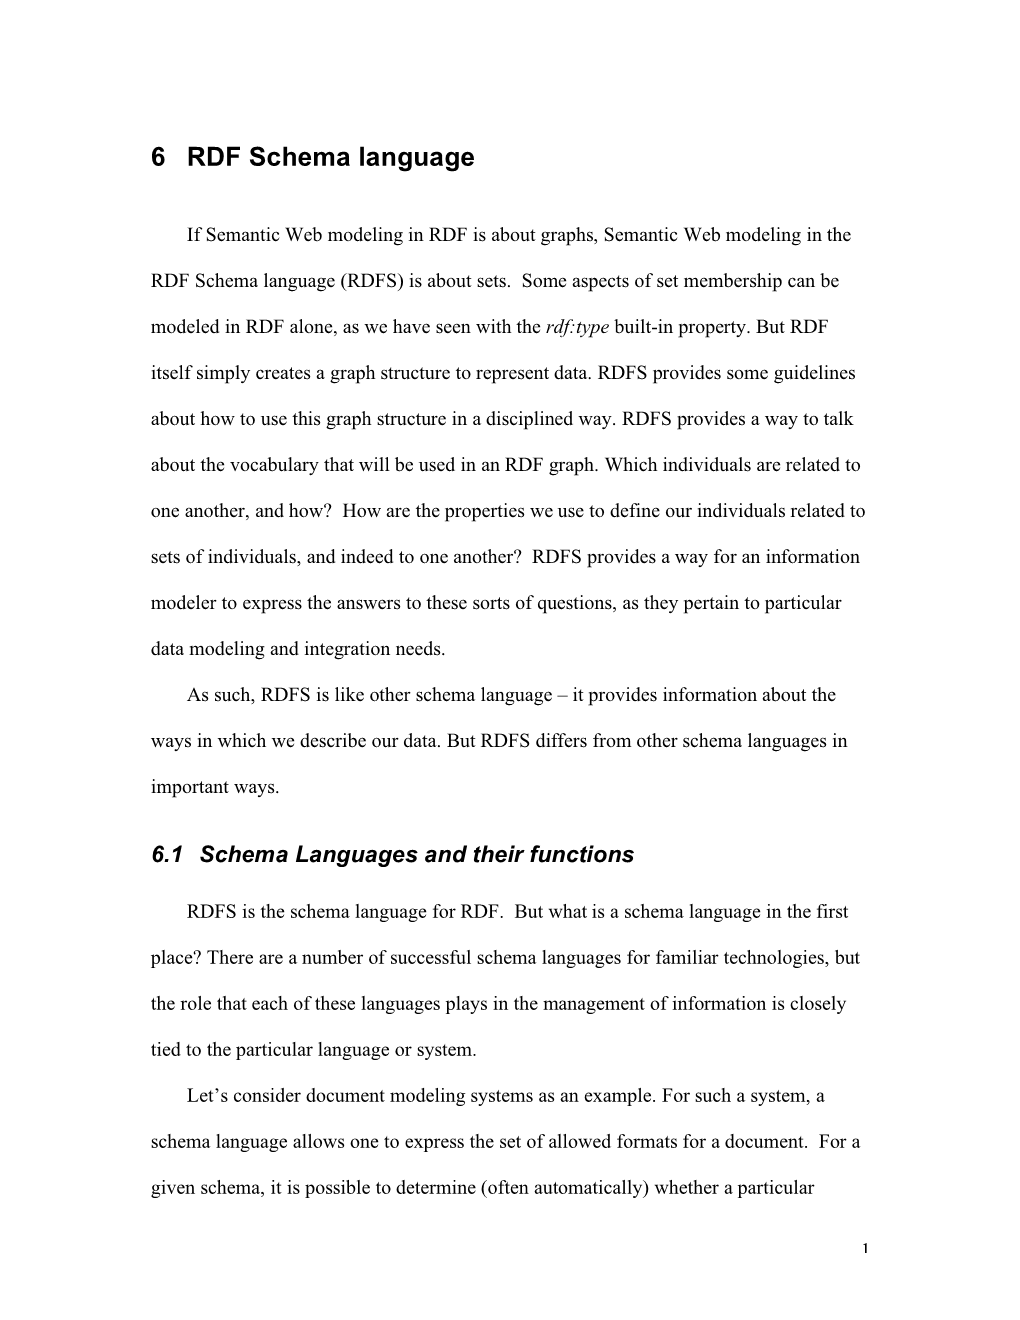 6 RDF Schema Language